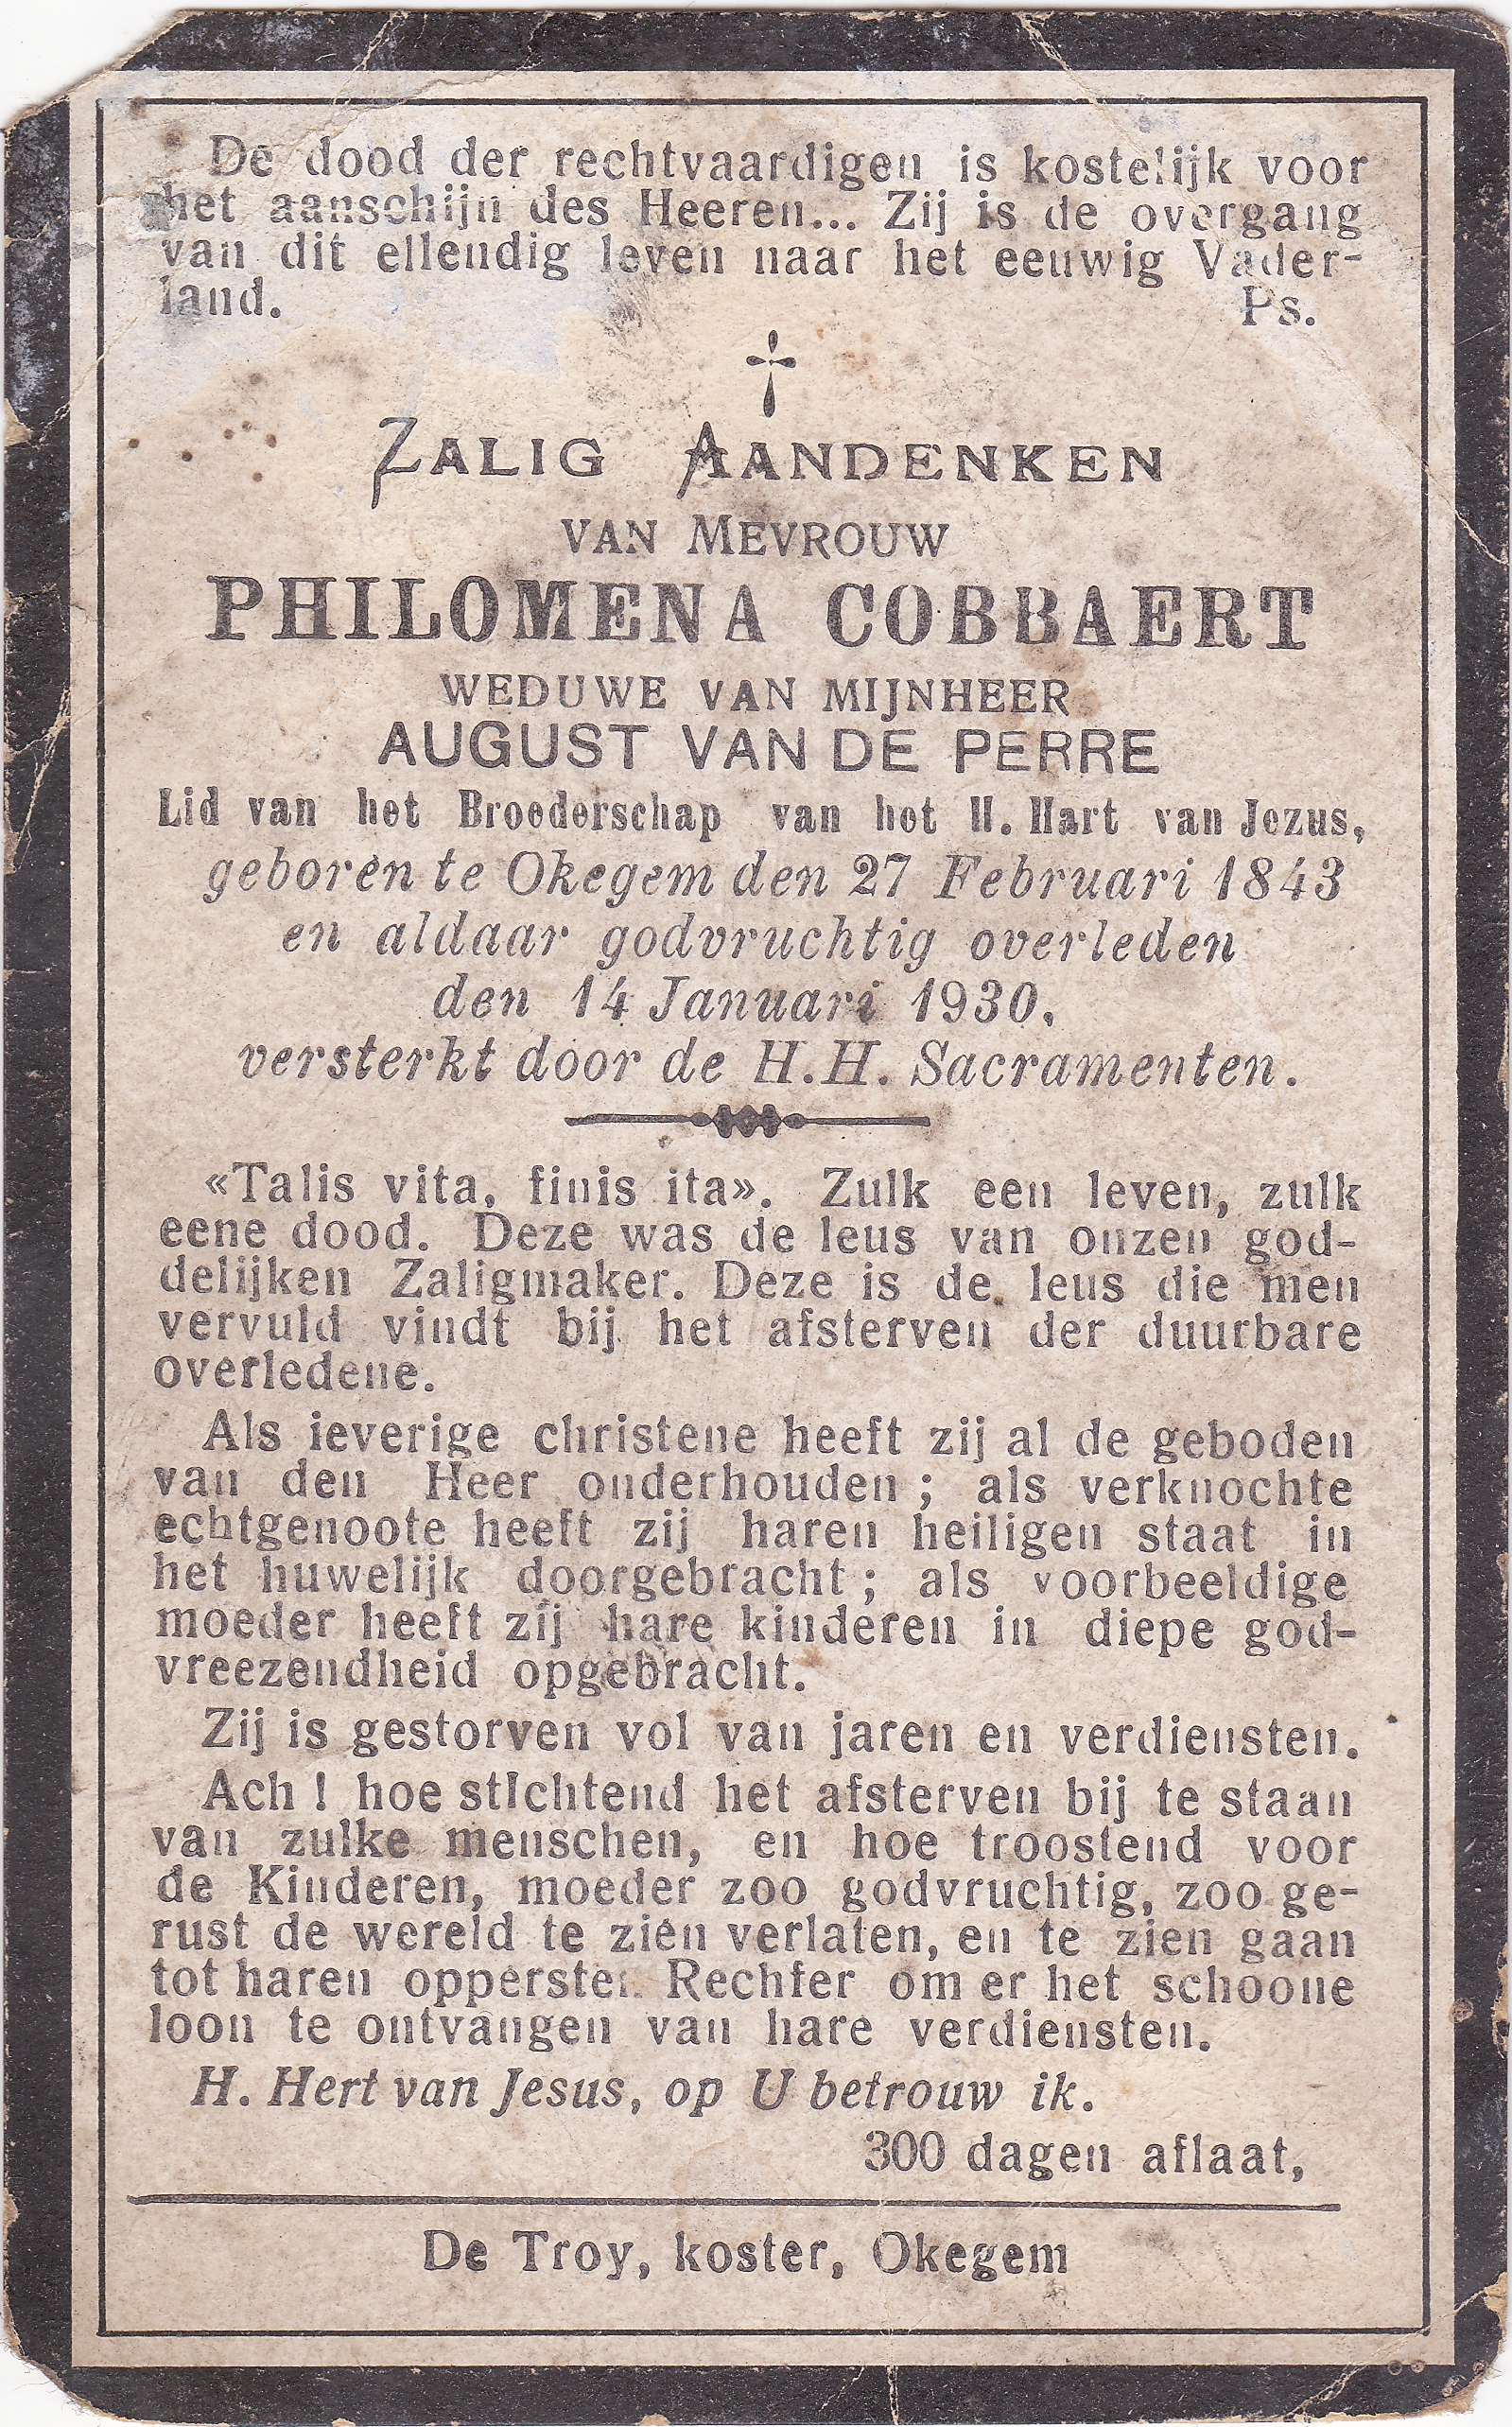 Cobbaert Philomena